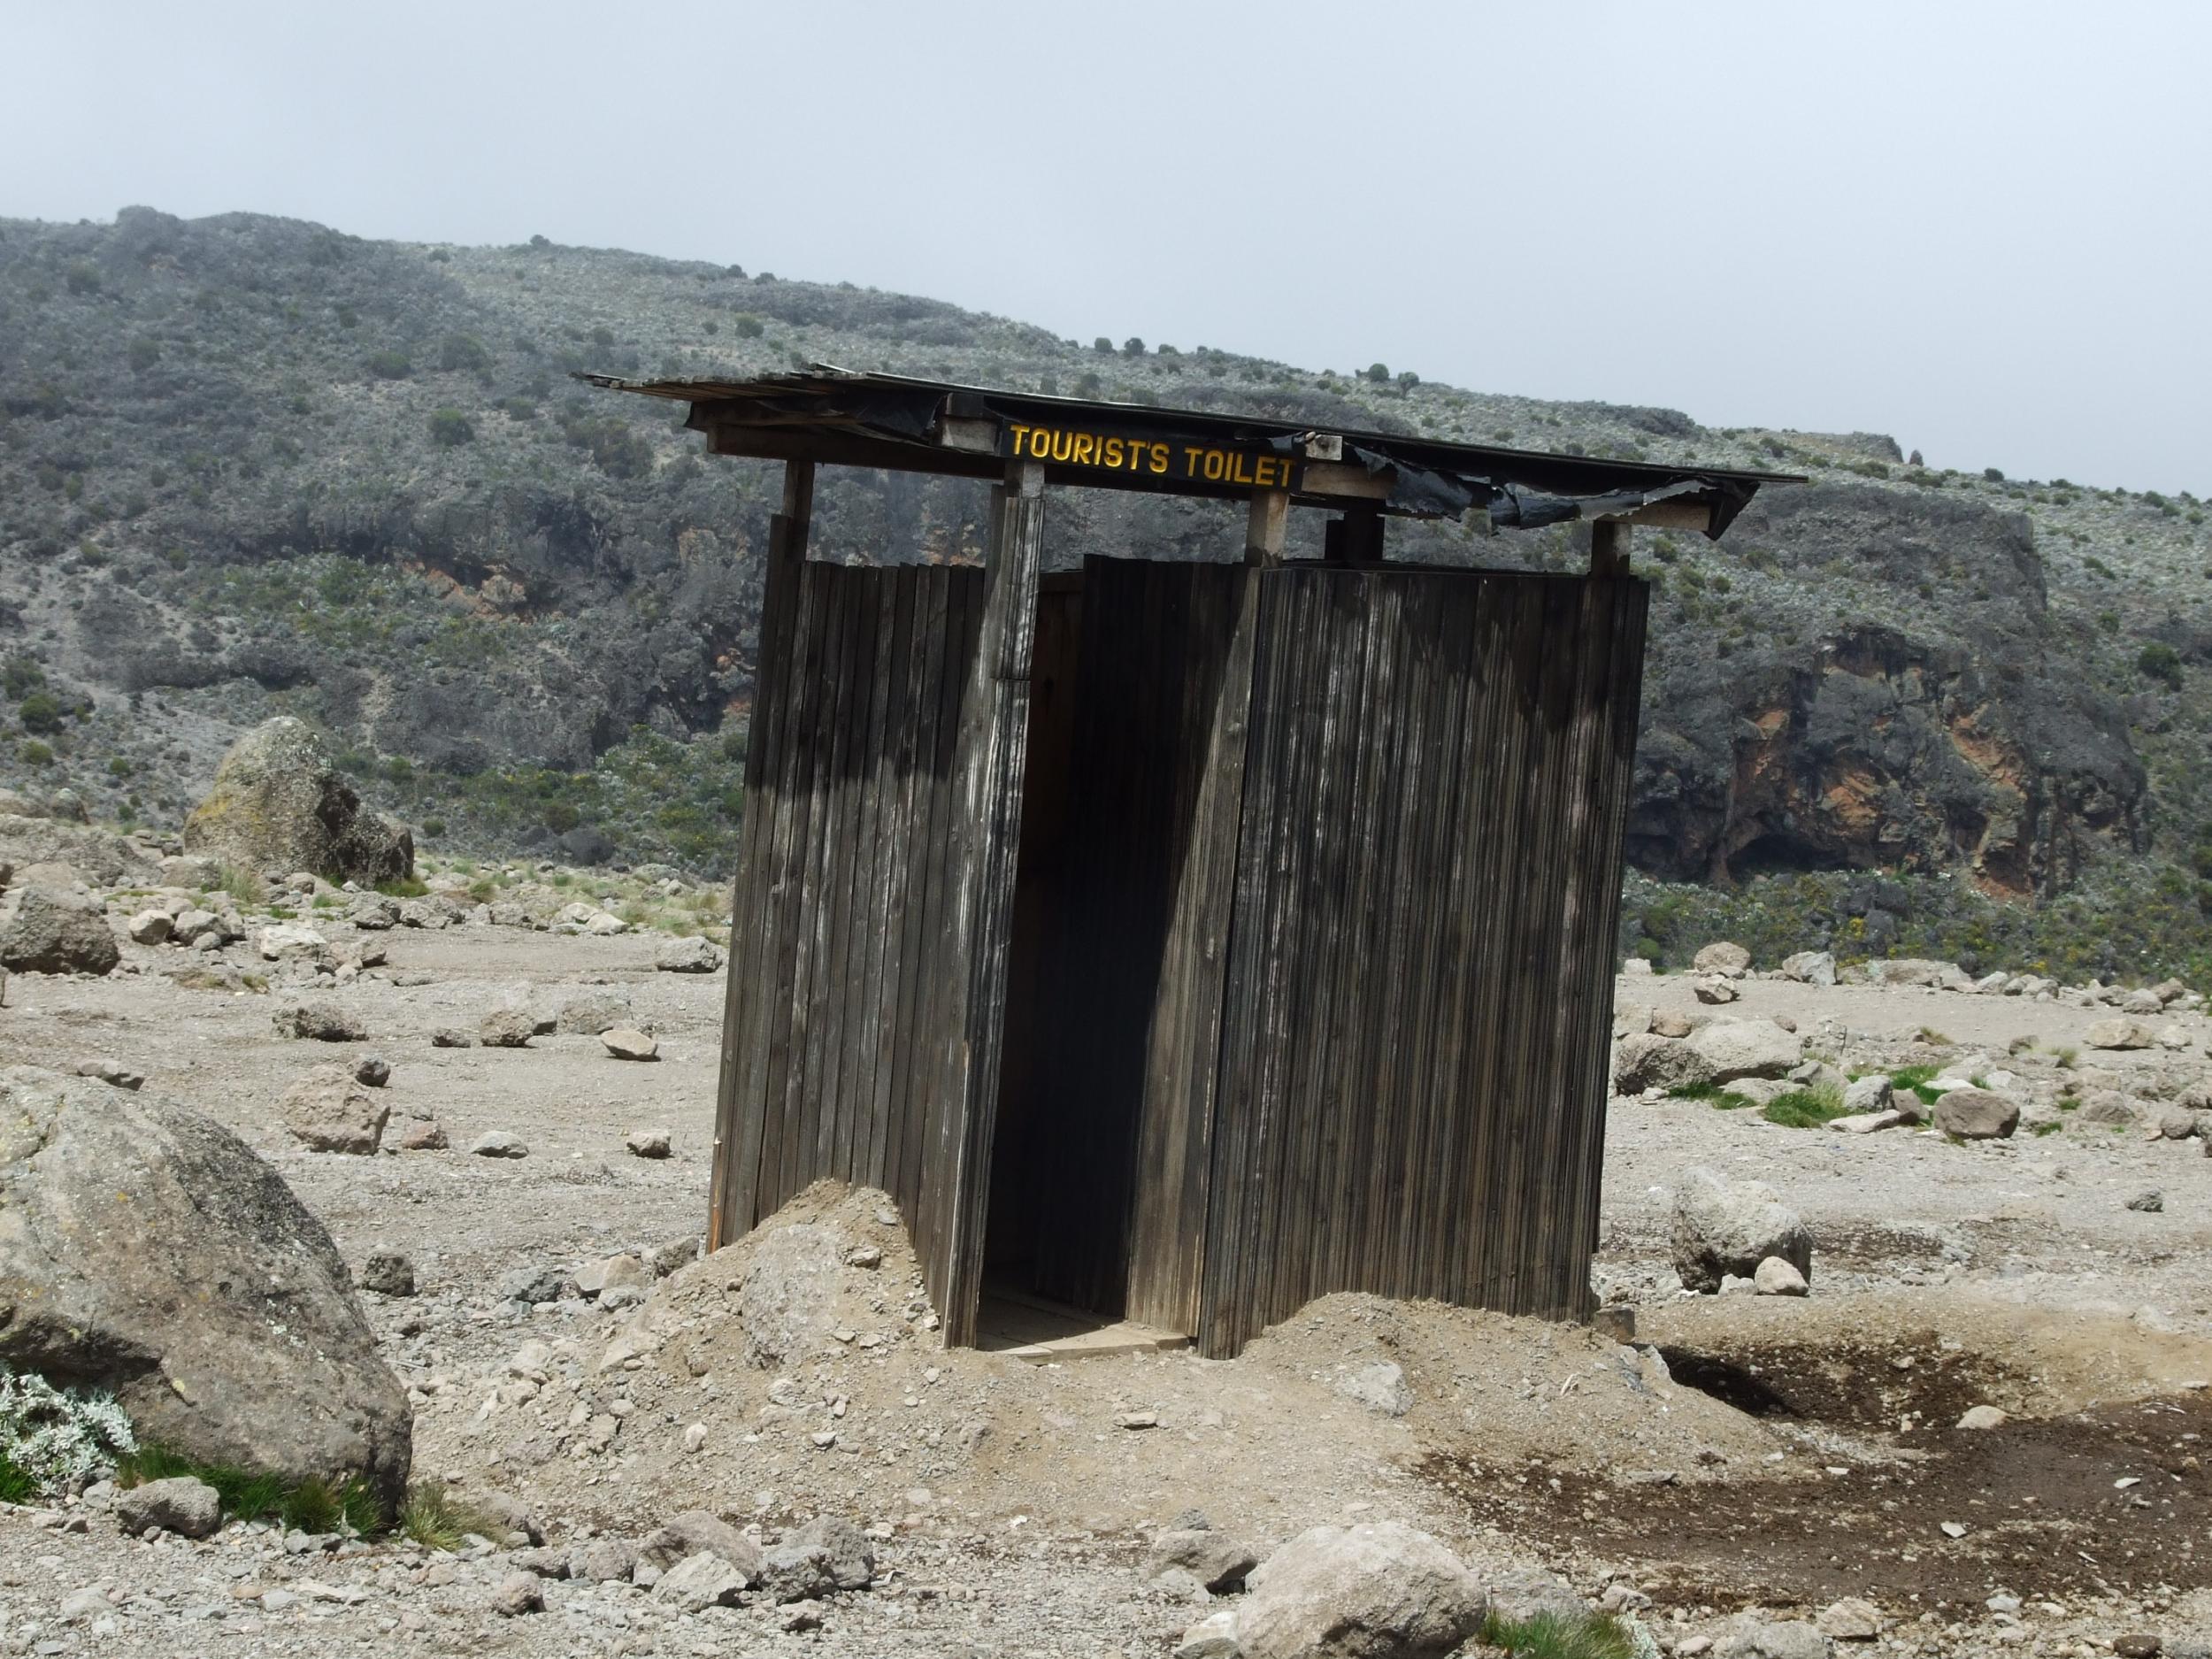 A 'tourist toilet' on Kili